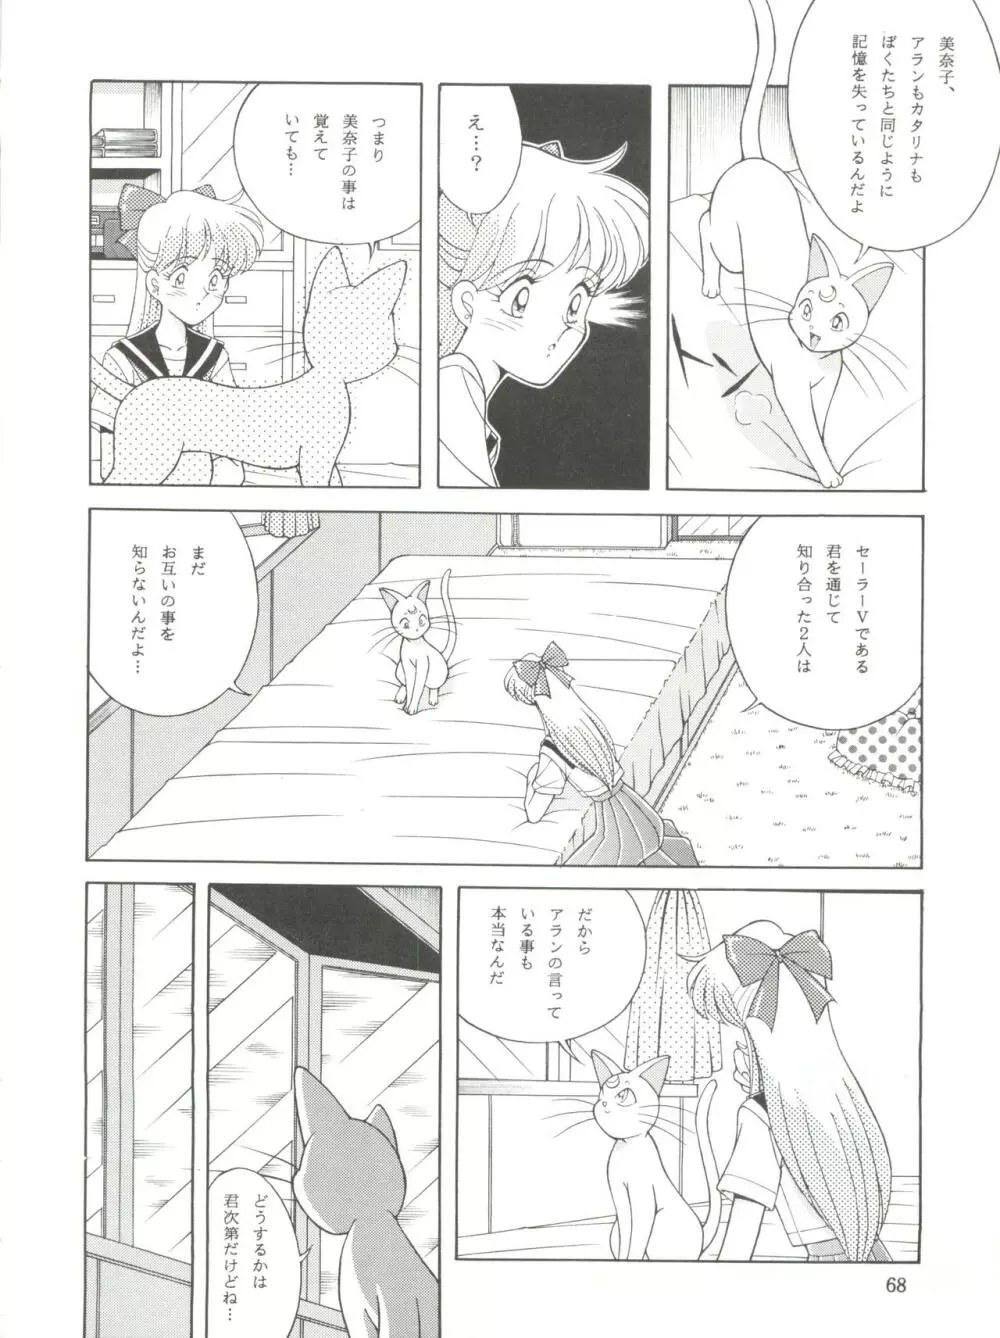 NANIWA-YA FINAL DRESS UP! - page68